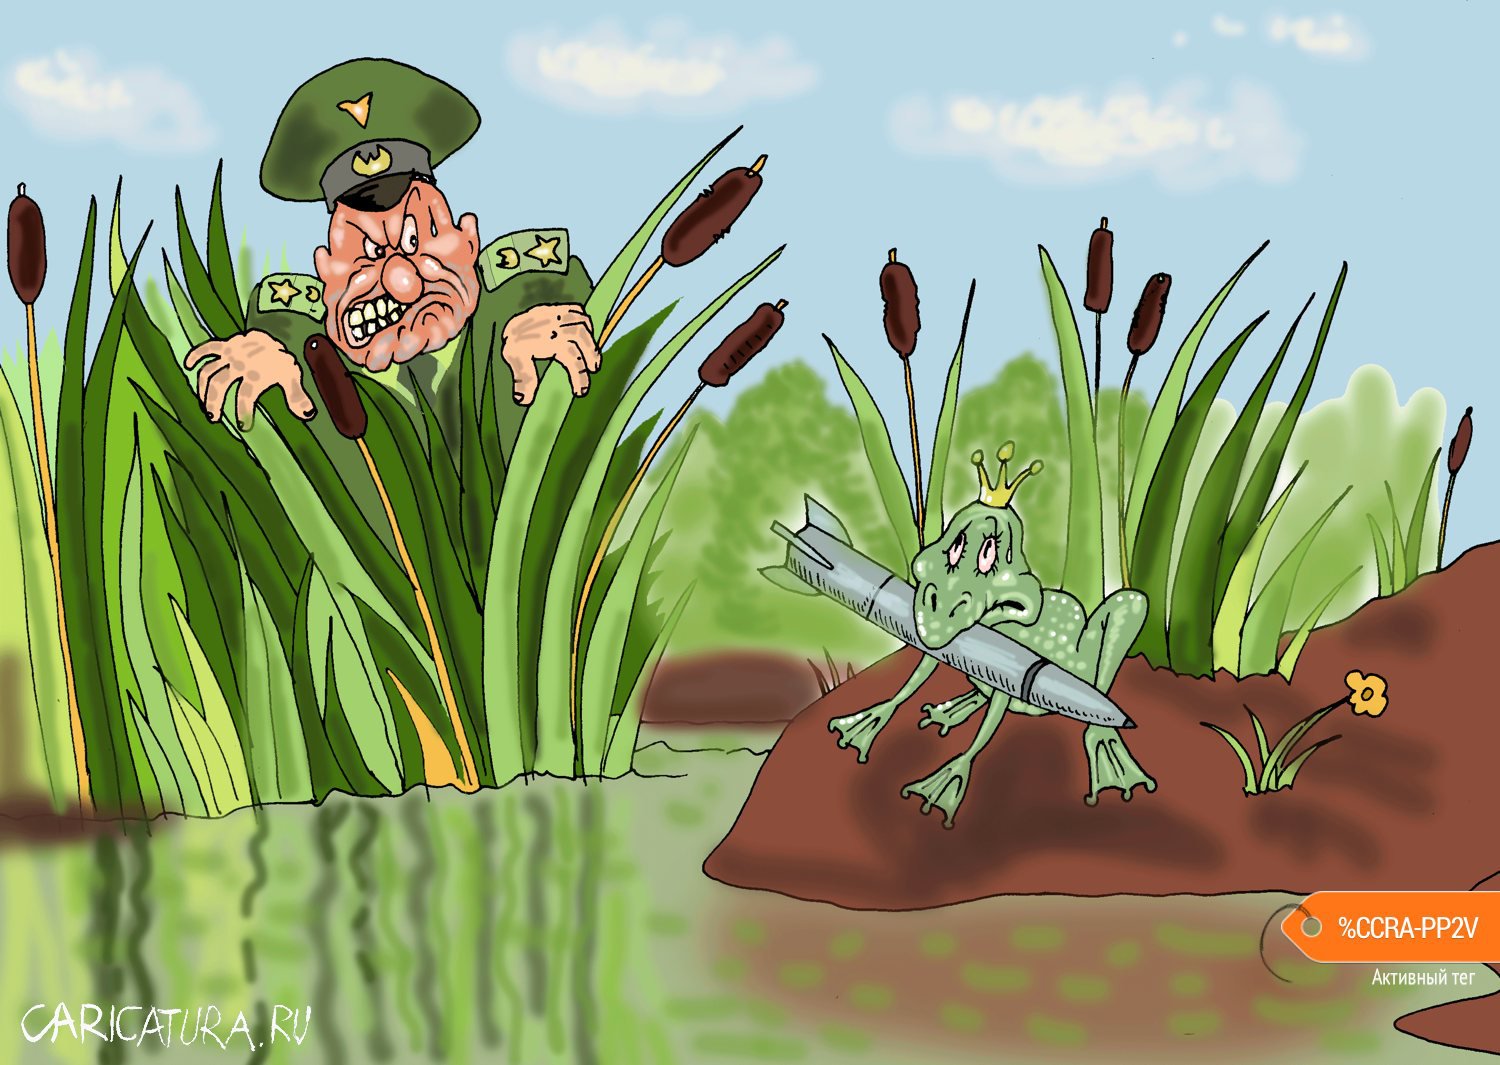 Карикатура "Упс", Булат Ирсаев